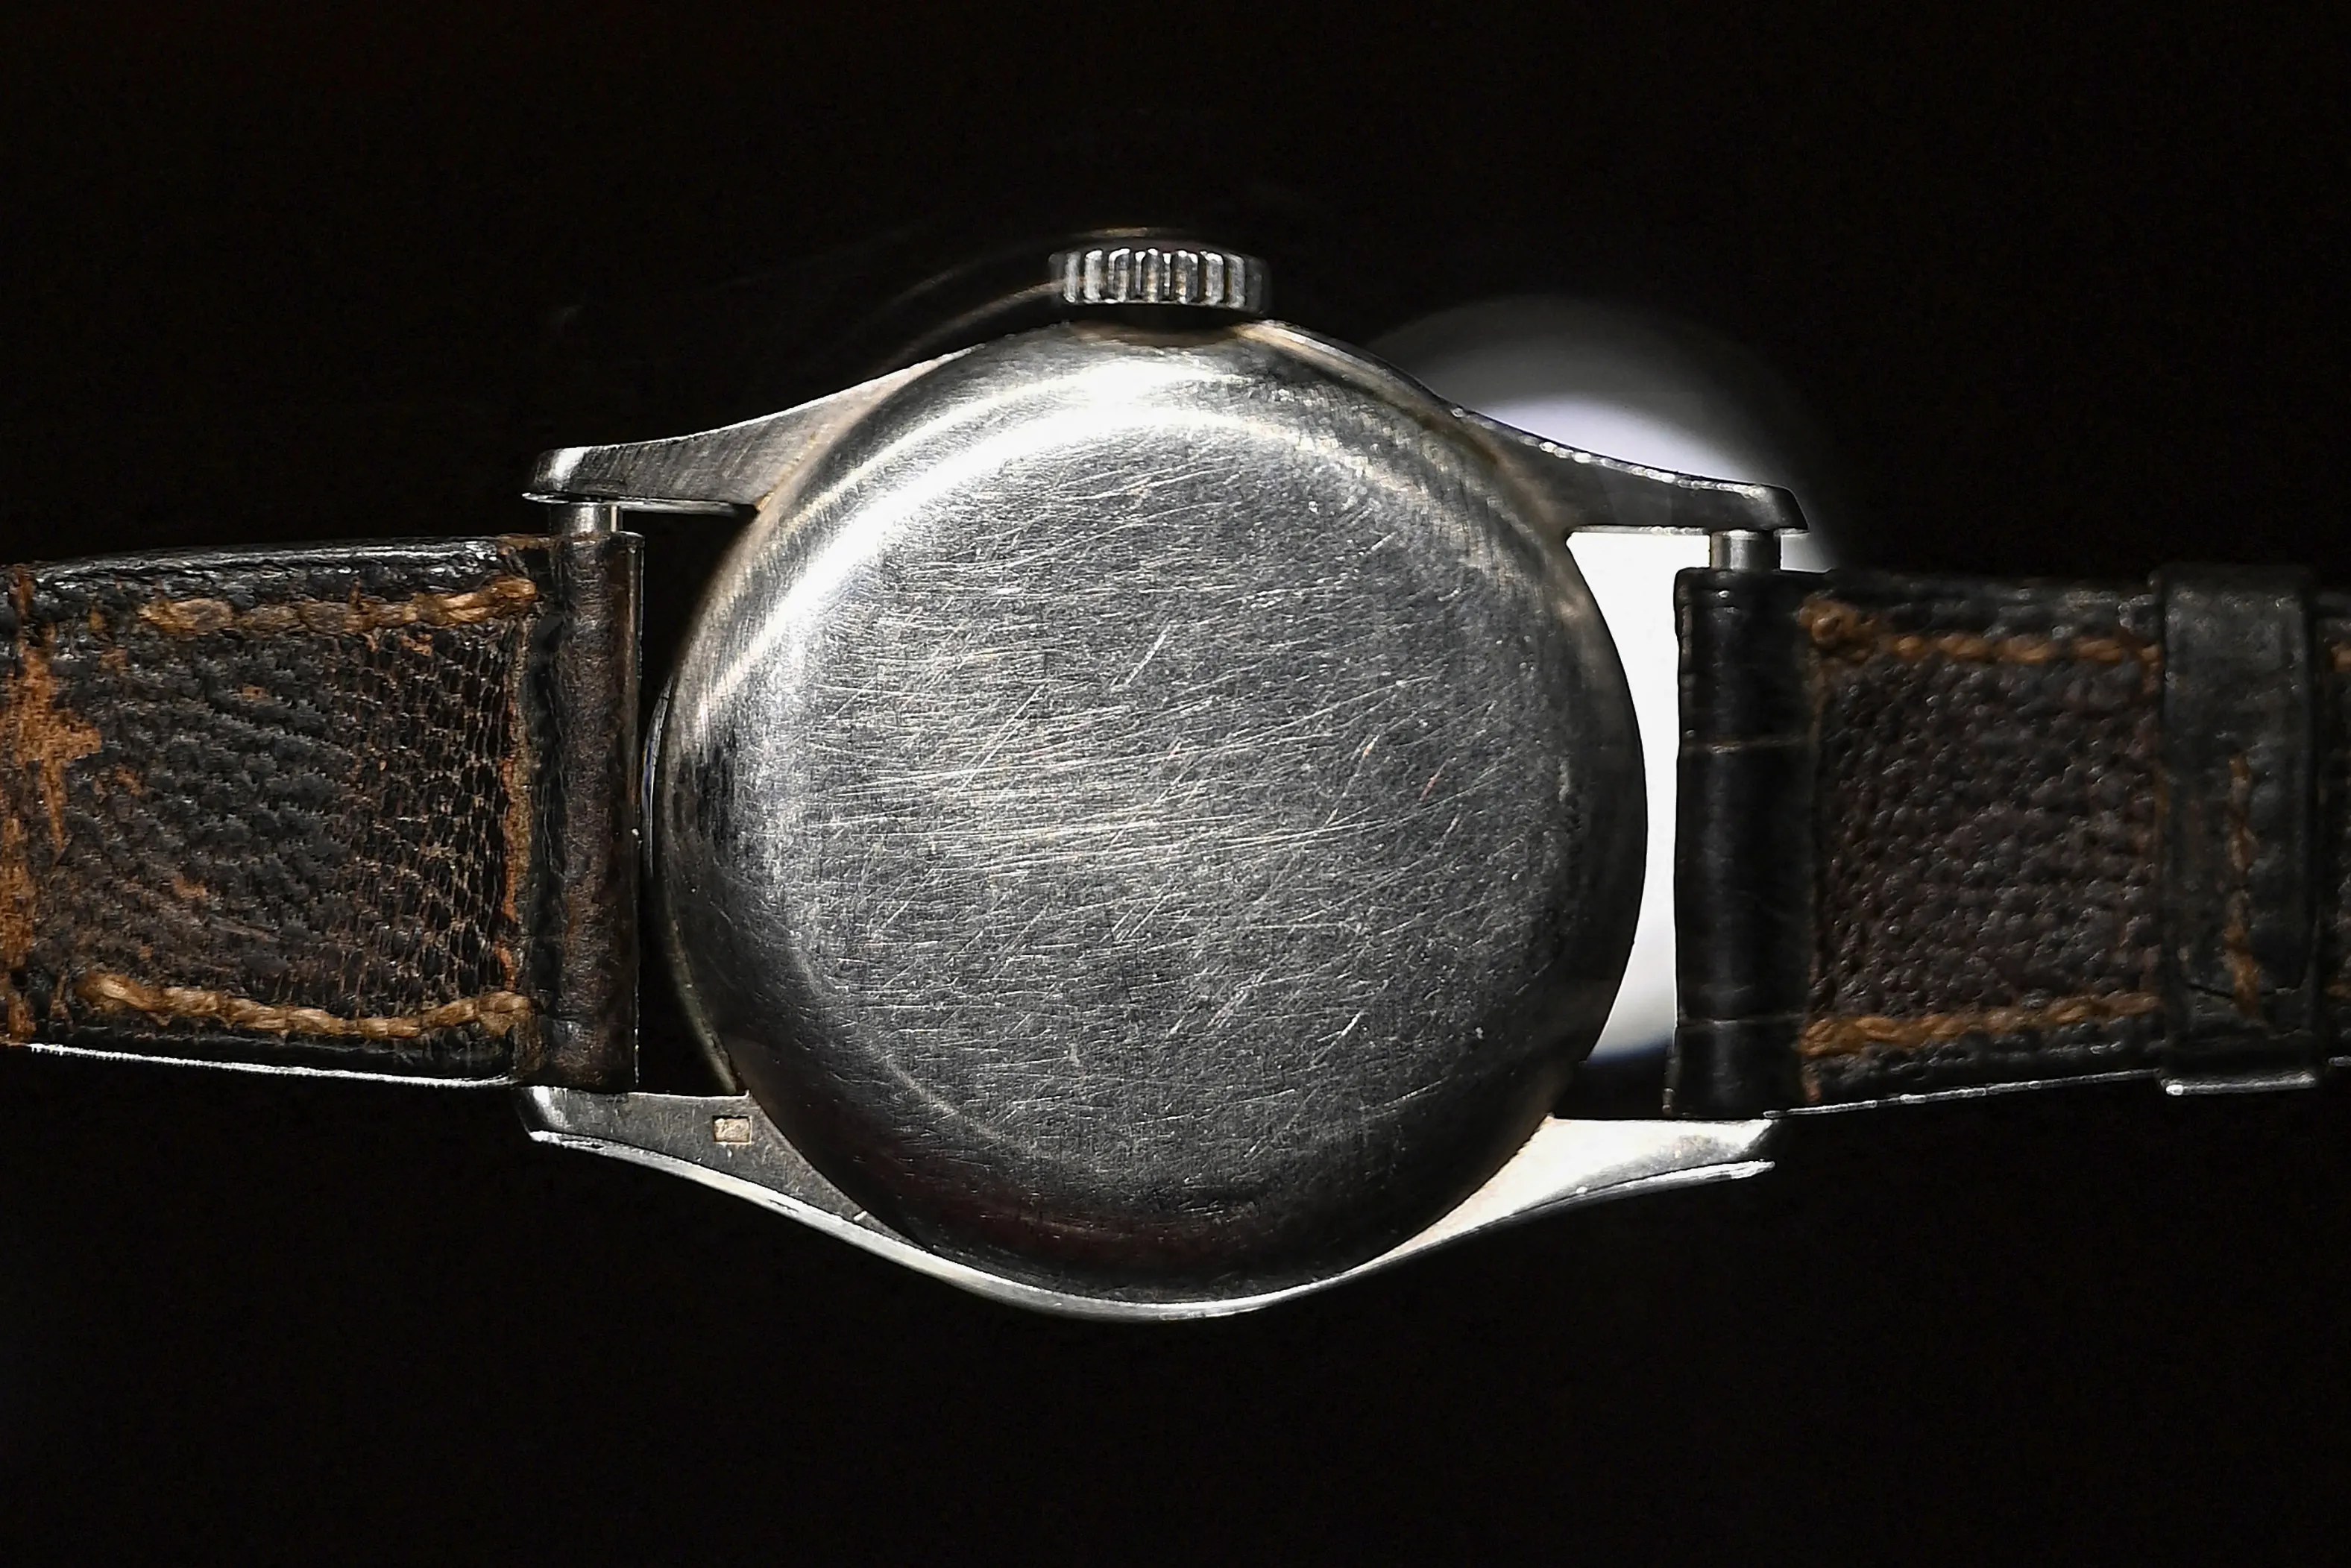 這支曾經屬於中國清朝末代皇帝愛新覺羅·溥儀的百達翡麗Ref 96 Quantieme Lune腕錶在香港菲利普斯拍賣行展出。它的成交價為567萬瑞郎。